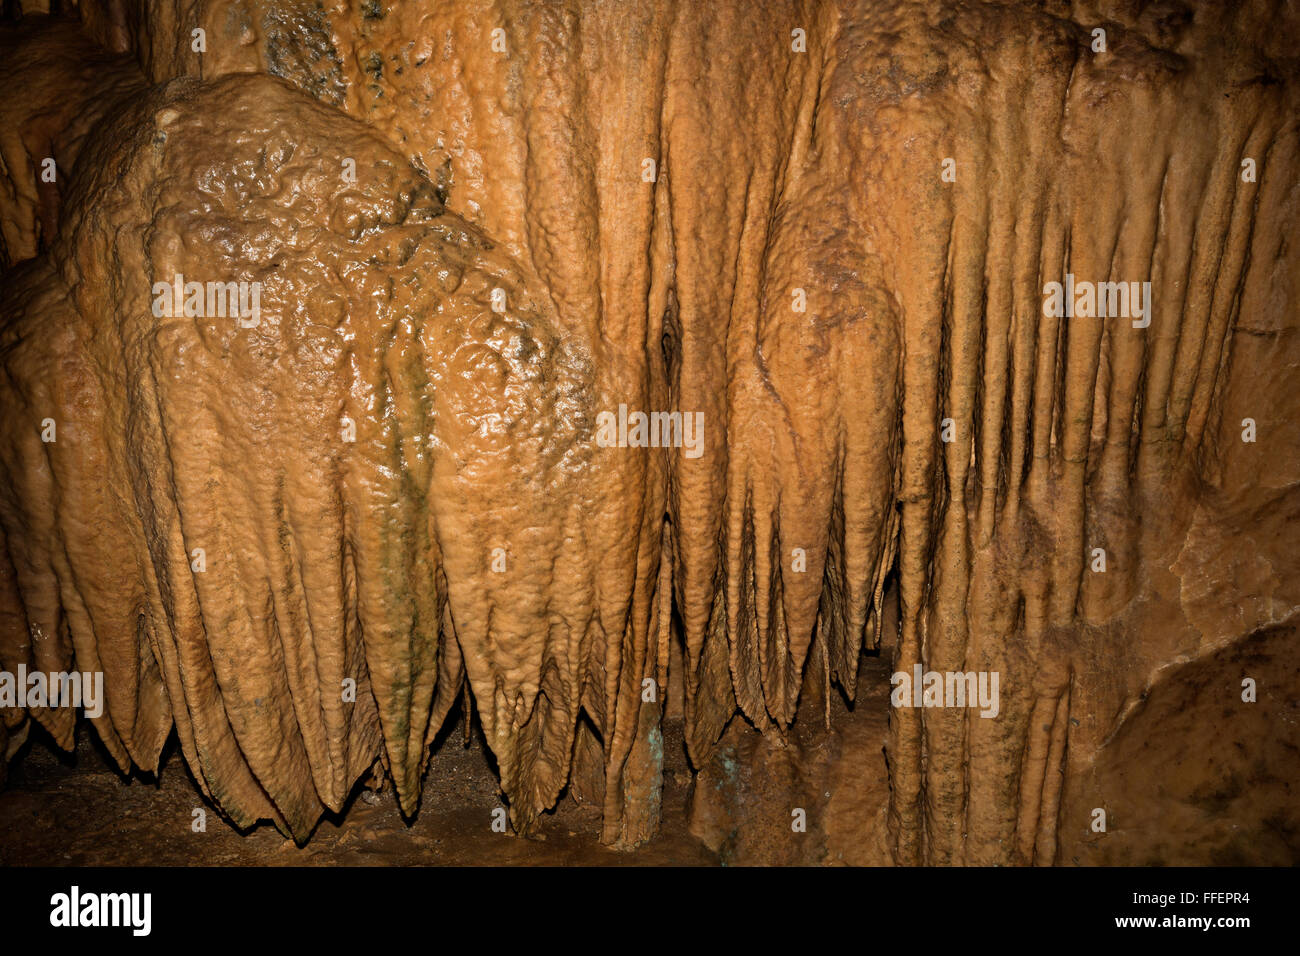 CA02848-00... Kalifornien - Kalkstein Schmelzstein und kannelierte Säulen in den Lake Shasta Caverns, ein National Natural Landmark. Stockfoto